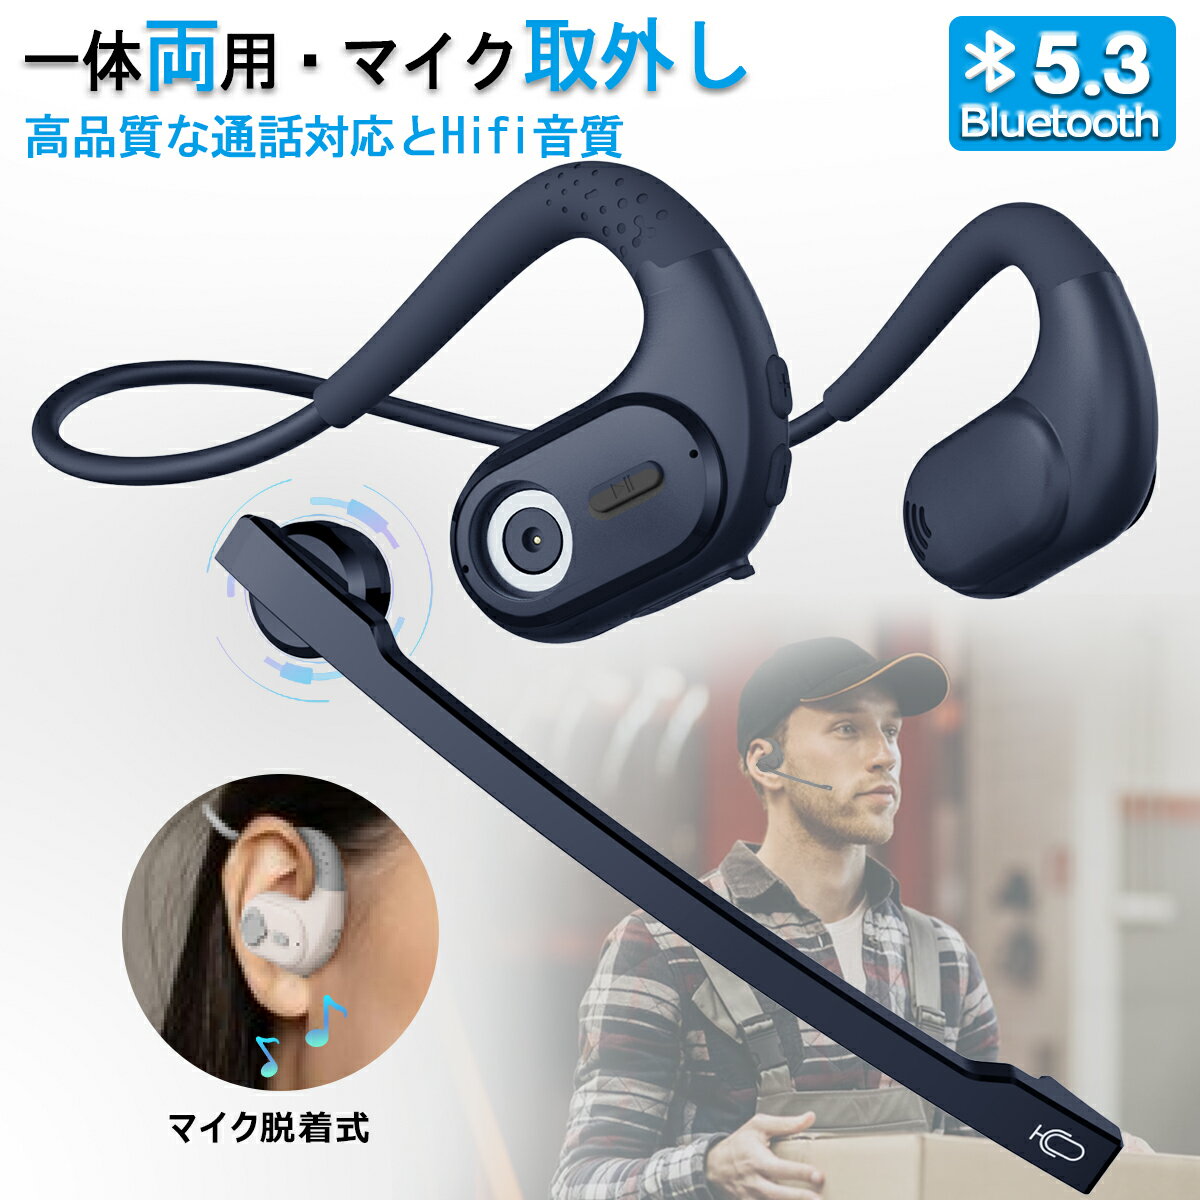 【革新なデザイン&一体両用】イヤホン Bluetooth ヘッドセット マイク脱着式 耳を塞がない ワイヤレス イヤホン 空気…